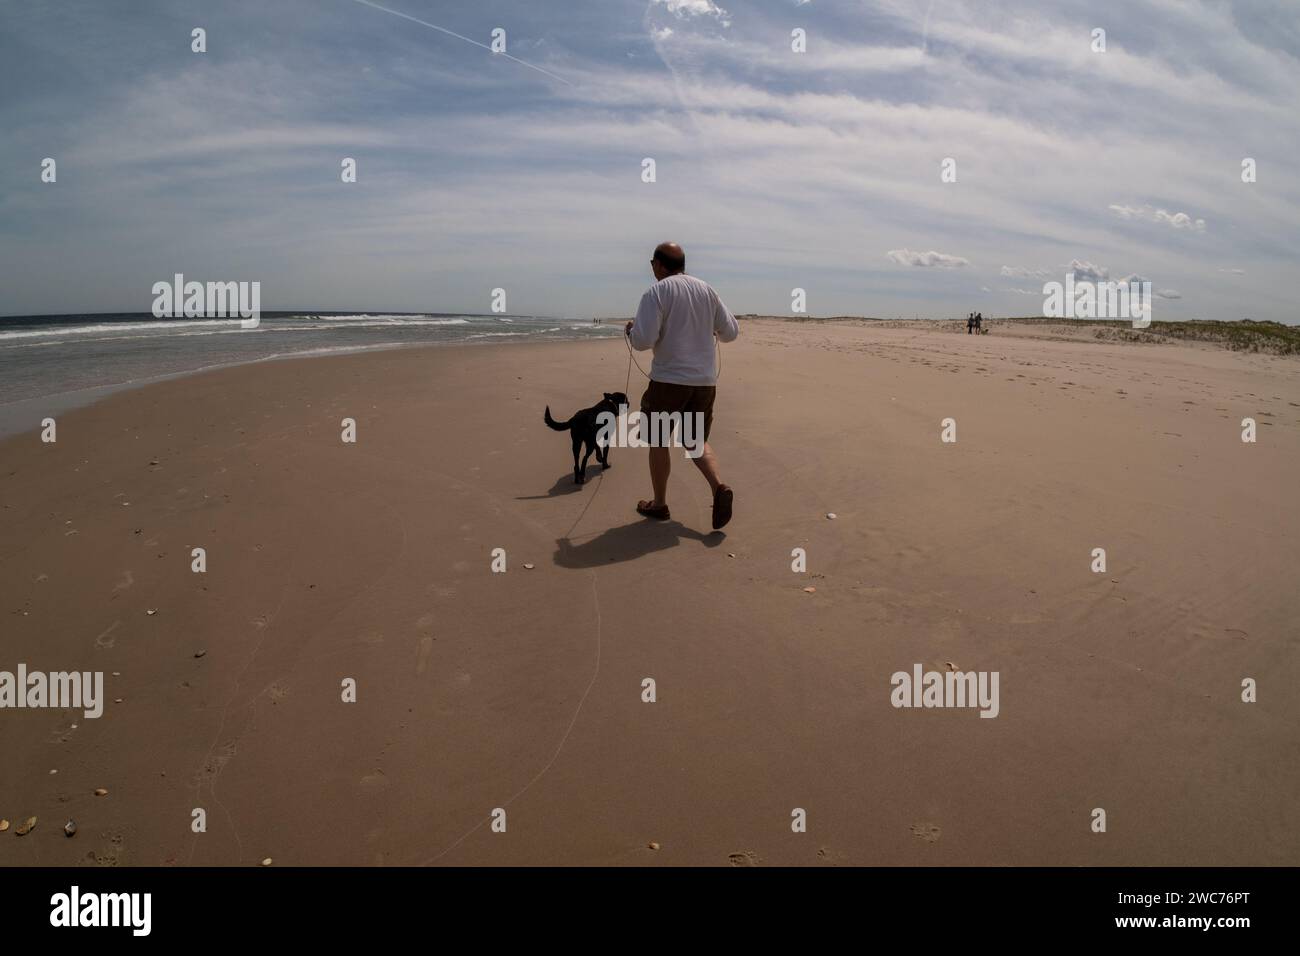 Un individu mâle qui se promène tranquillement le long des rives sablonneuses d'une plage, accompagné de son fidèle compagnon canin Banque D'Images